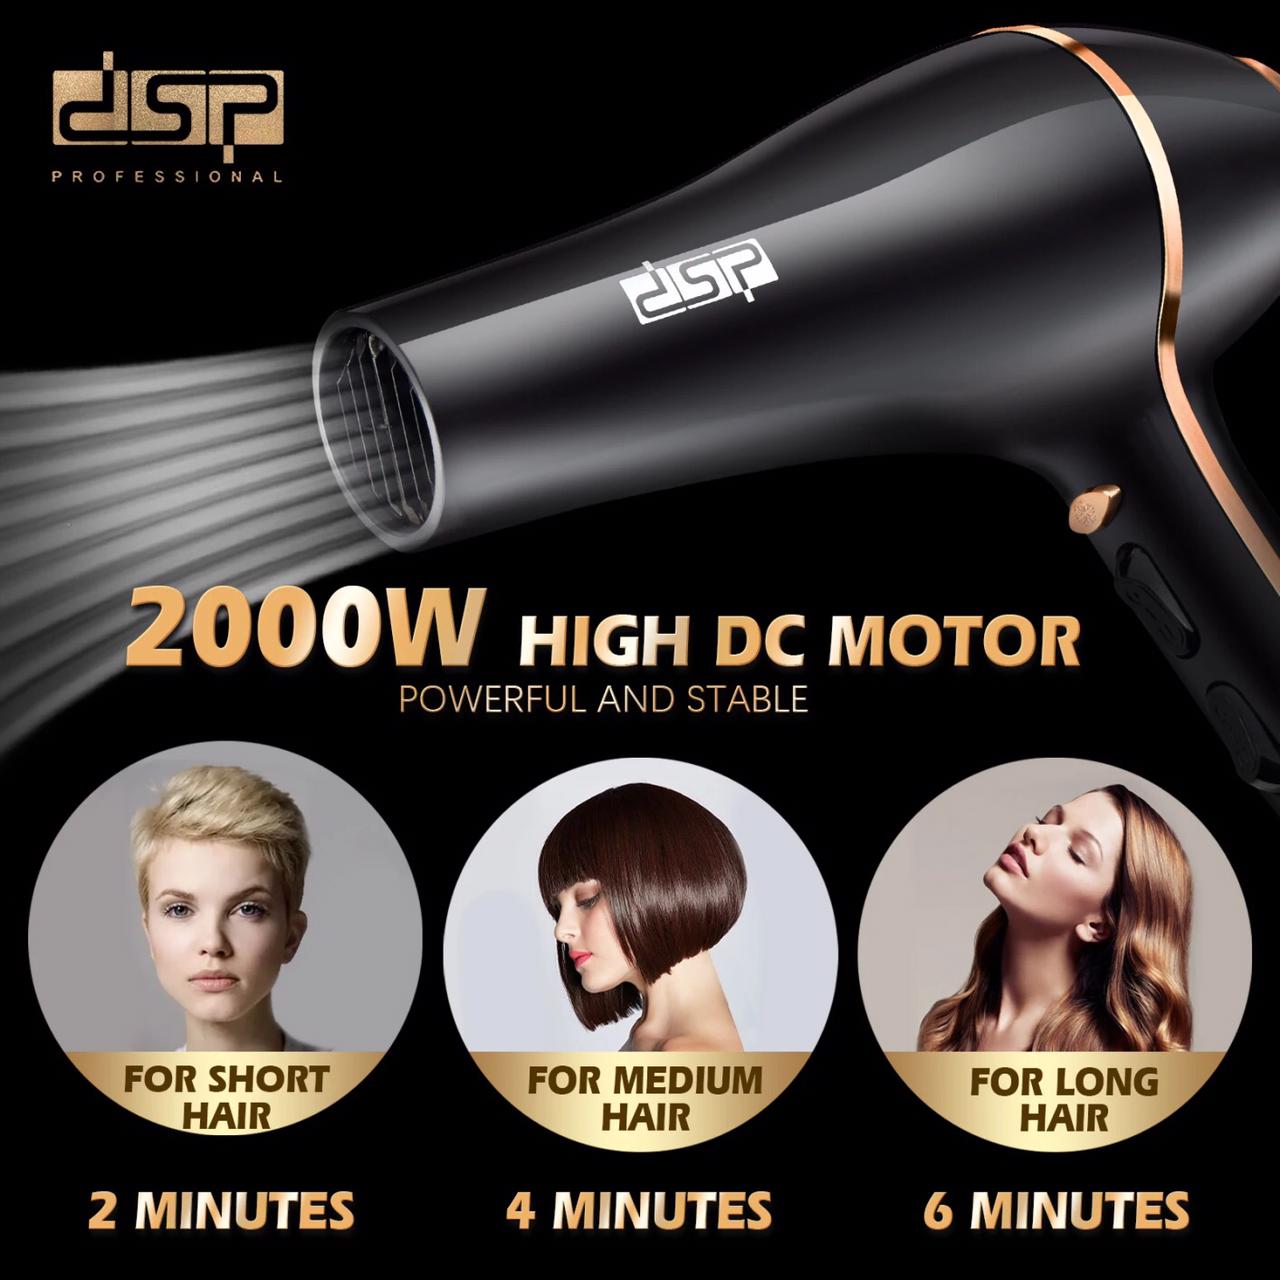 dsp-multi funcation hair dryer